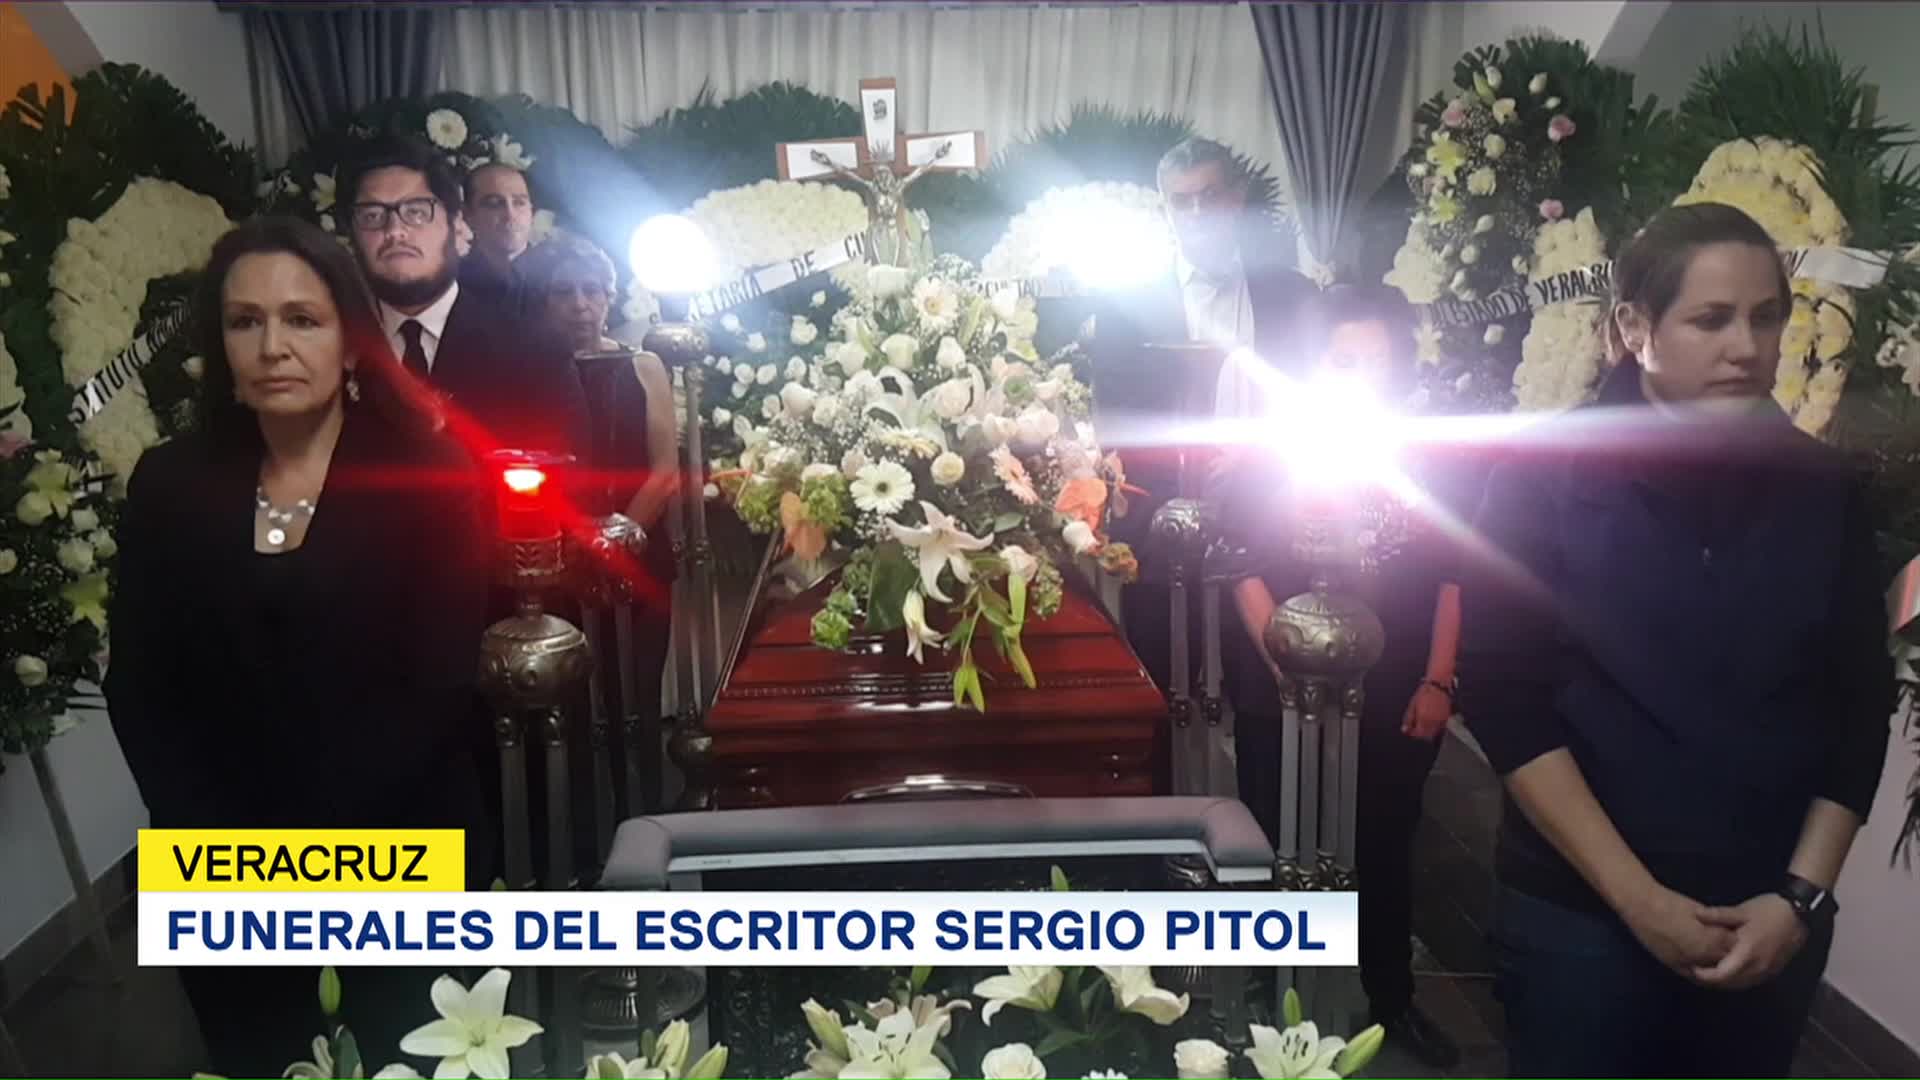 Funerales del escritor Sergio Pitol en Veracruz